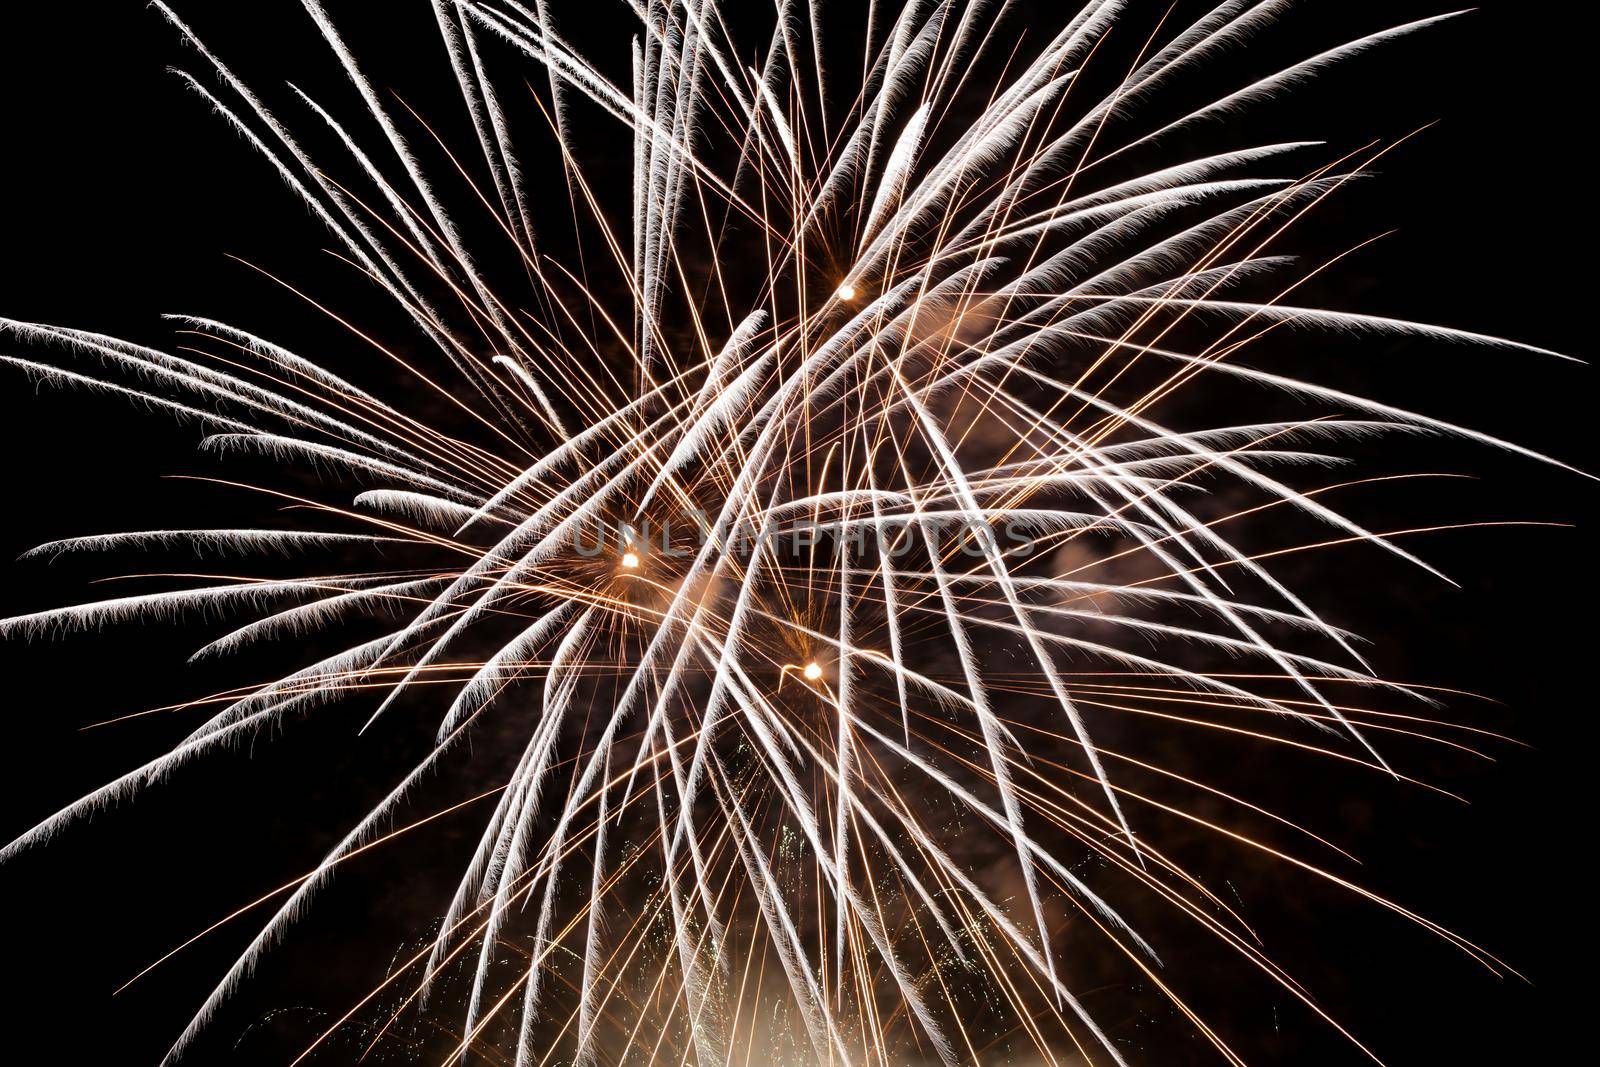 Firework explosion in a dark night